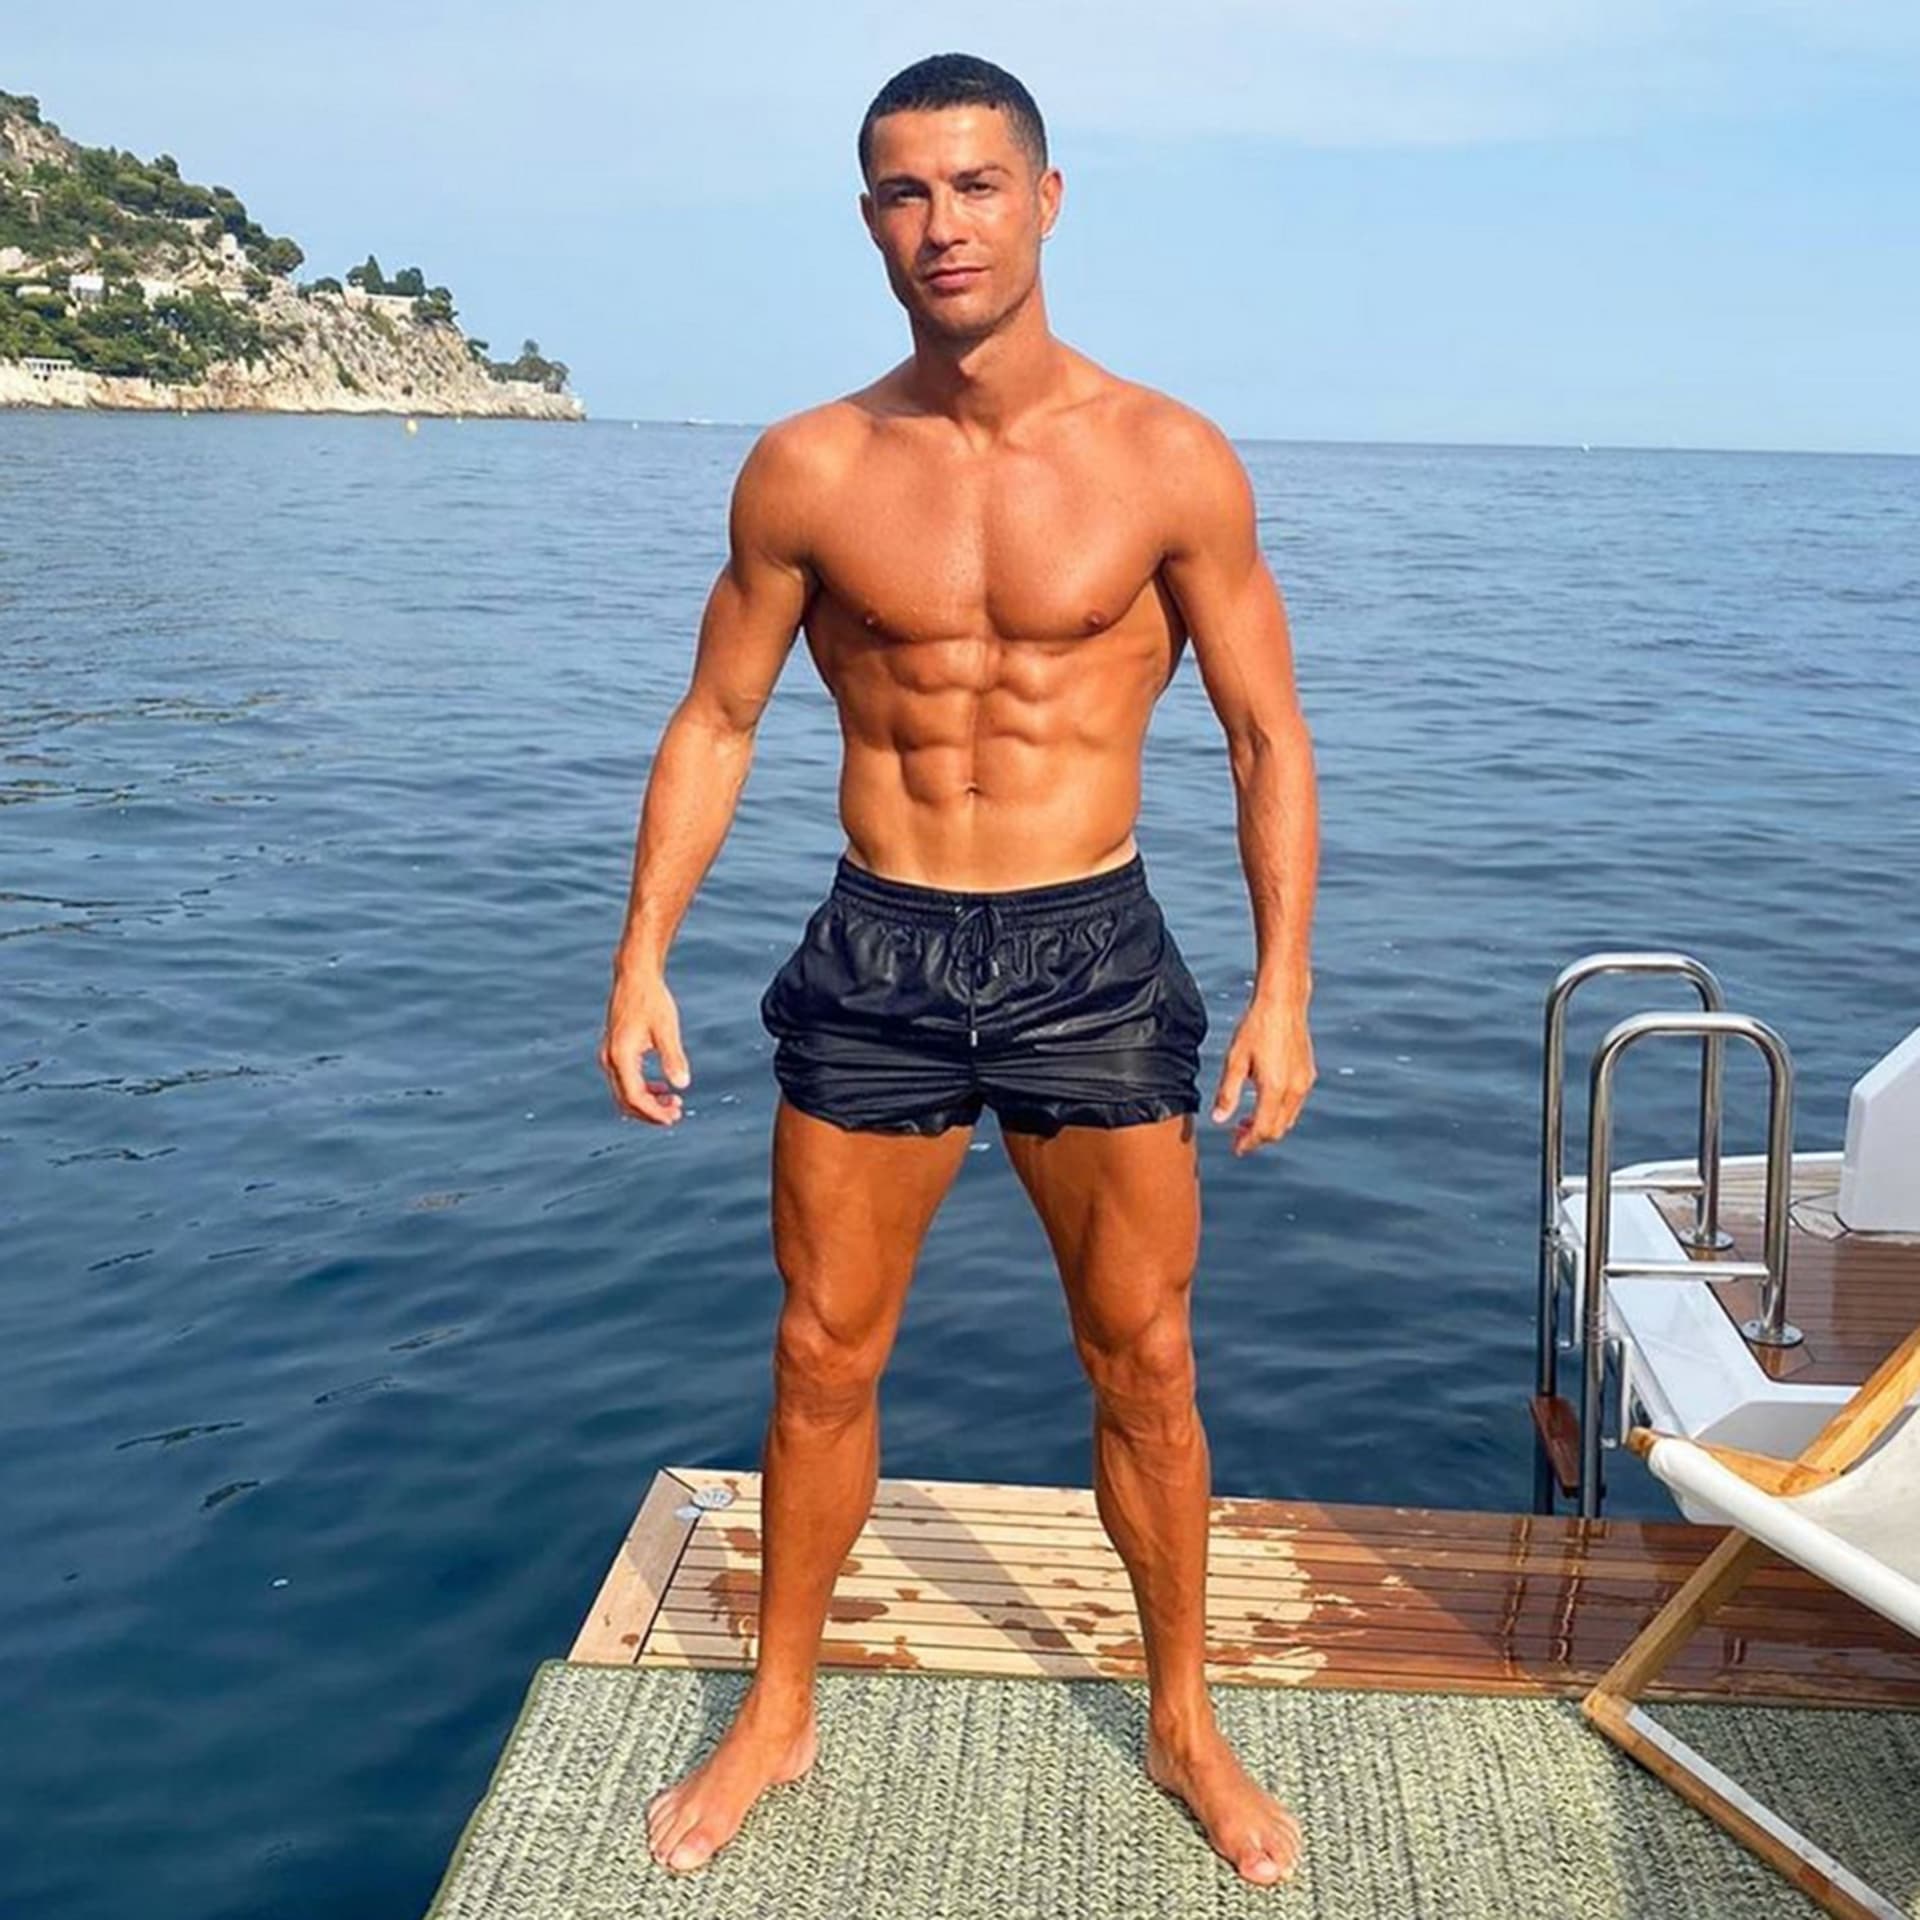 Ronaldo své tělo ukazuje rád a často. Vzhledem k tělesným proporcím mohou být stravovací návyky a životní styl tohoto mimořádného fotbalisty pro mnohé velmi inspirativní.